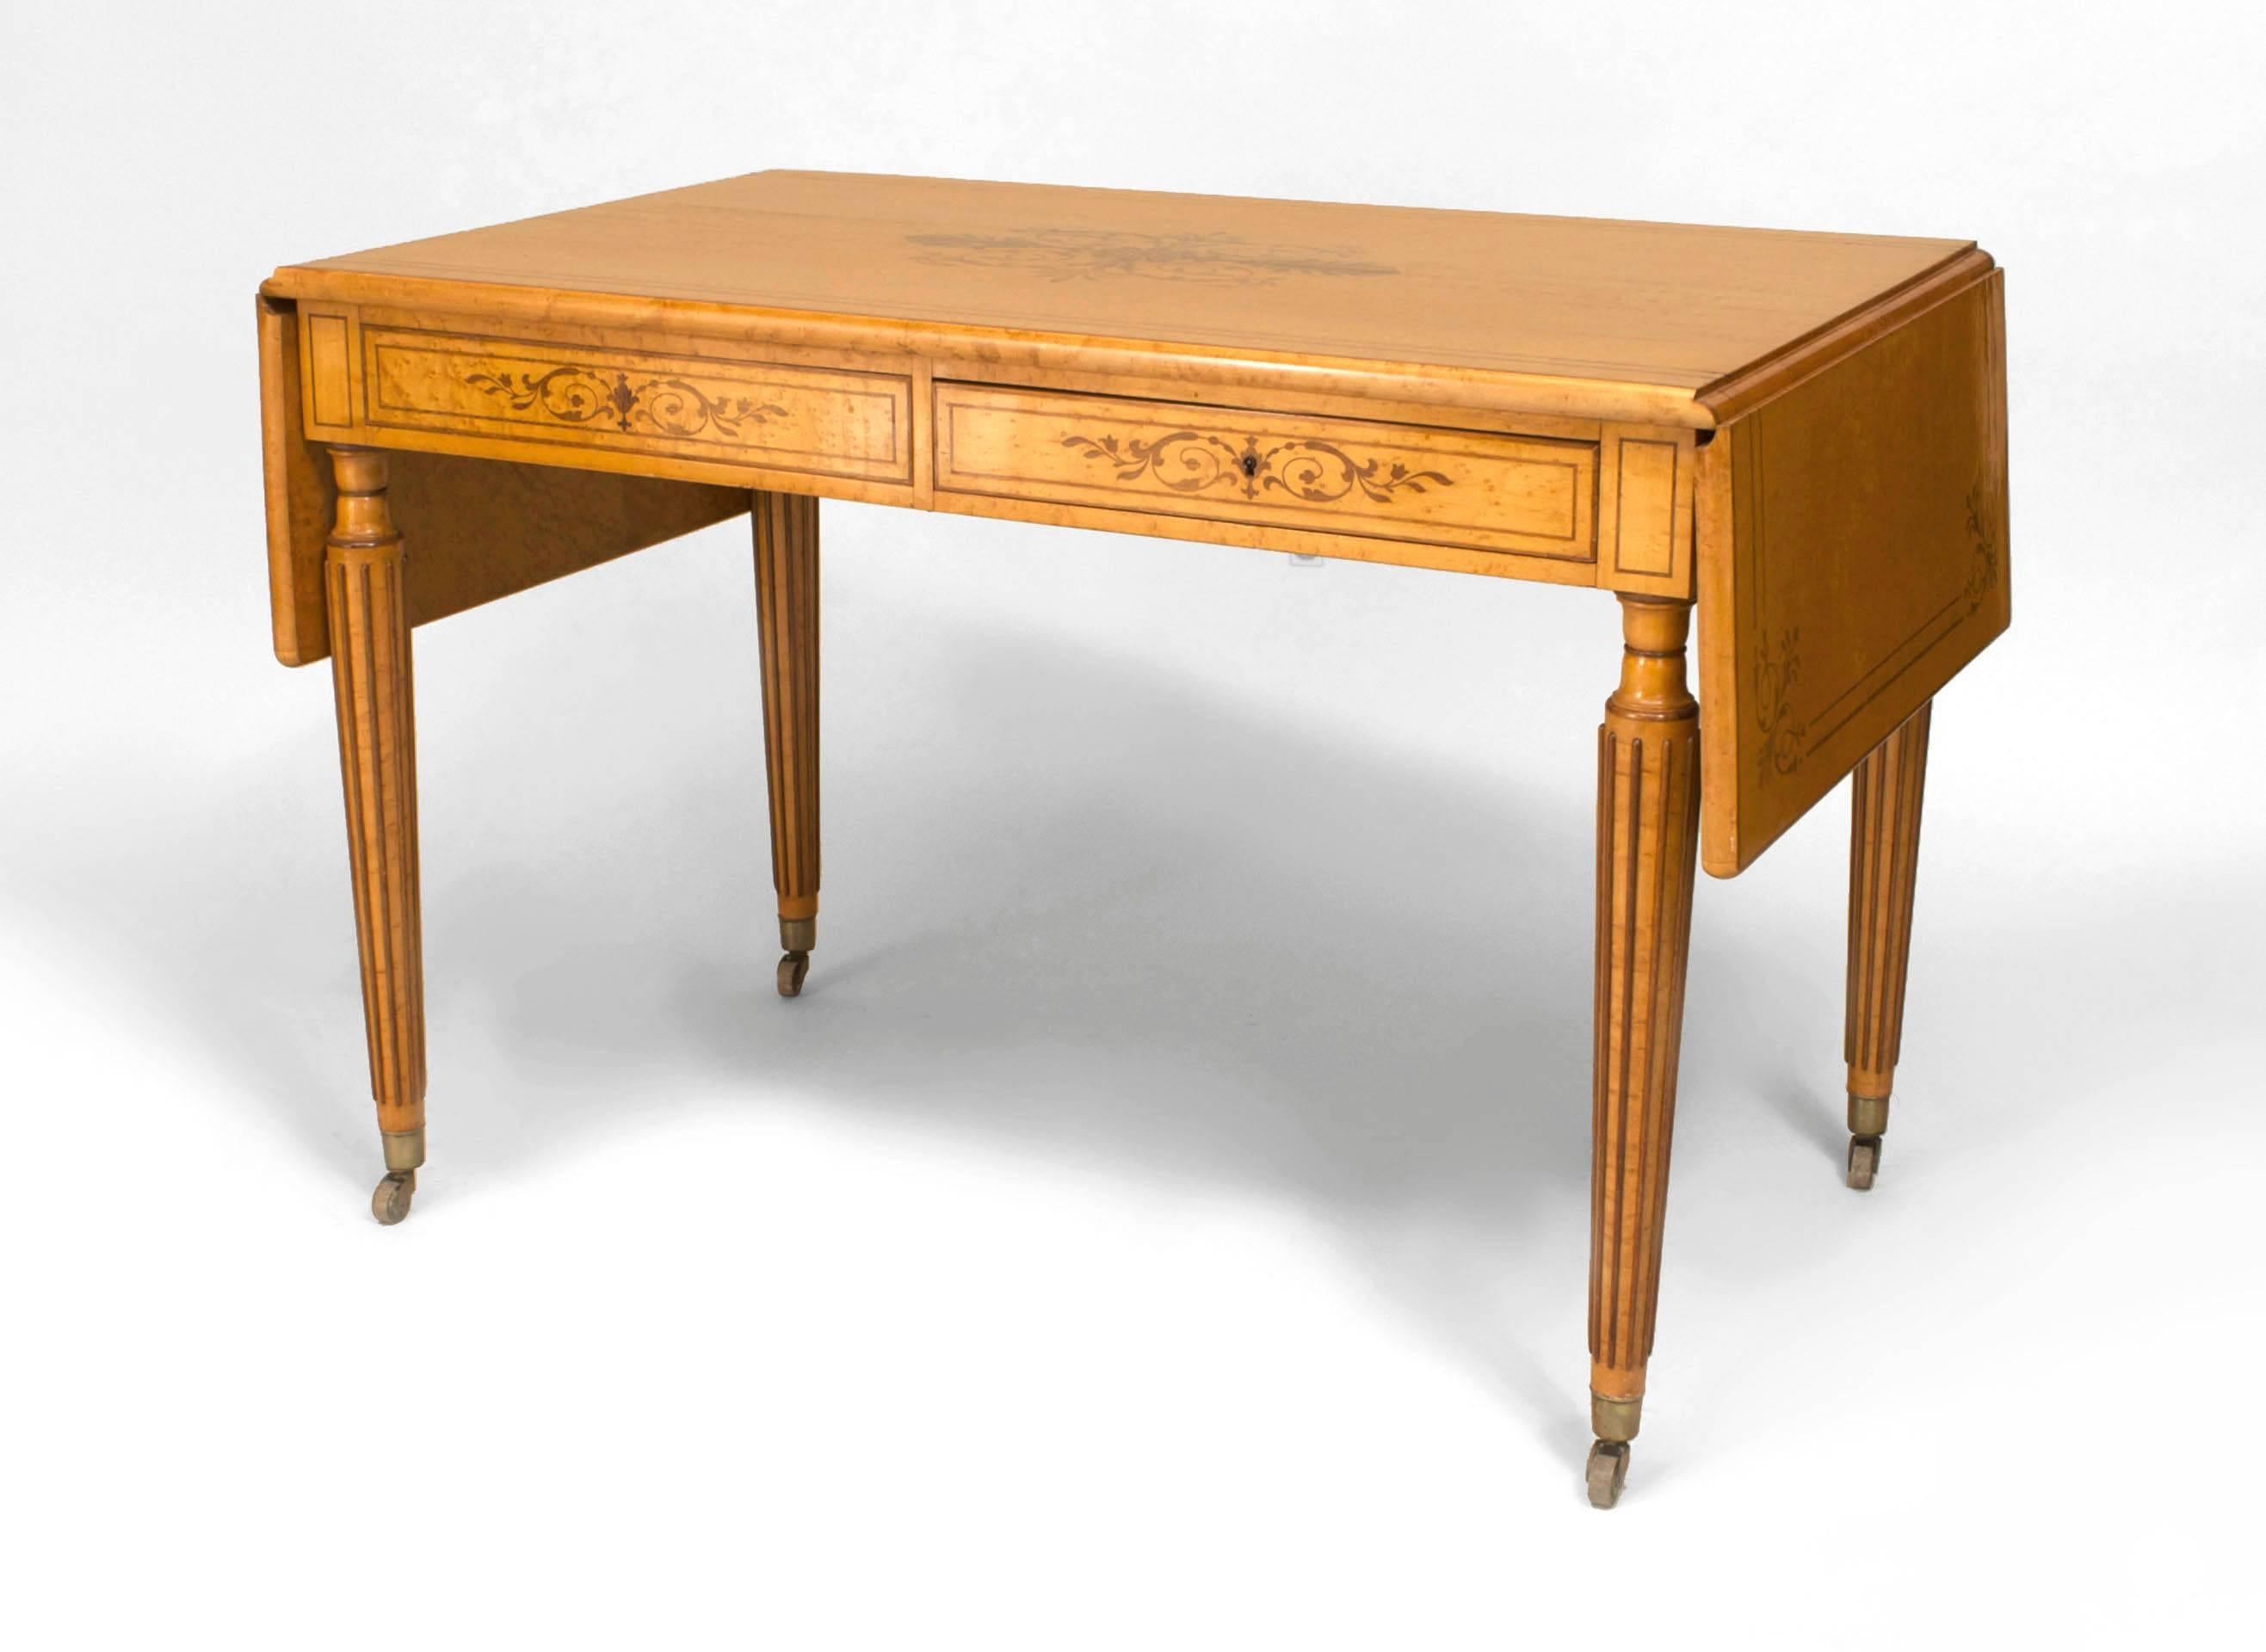 Französisch Charles X Birdseye Ahorn davenport Tisch Schreibtisch mit Amaranth Intarsien oben & Drop Seiten auf 4 konischen kannelierten Beinen mit einer einzigen Schublade auf der Vorder-und Rückseite unterstützt.
